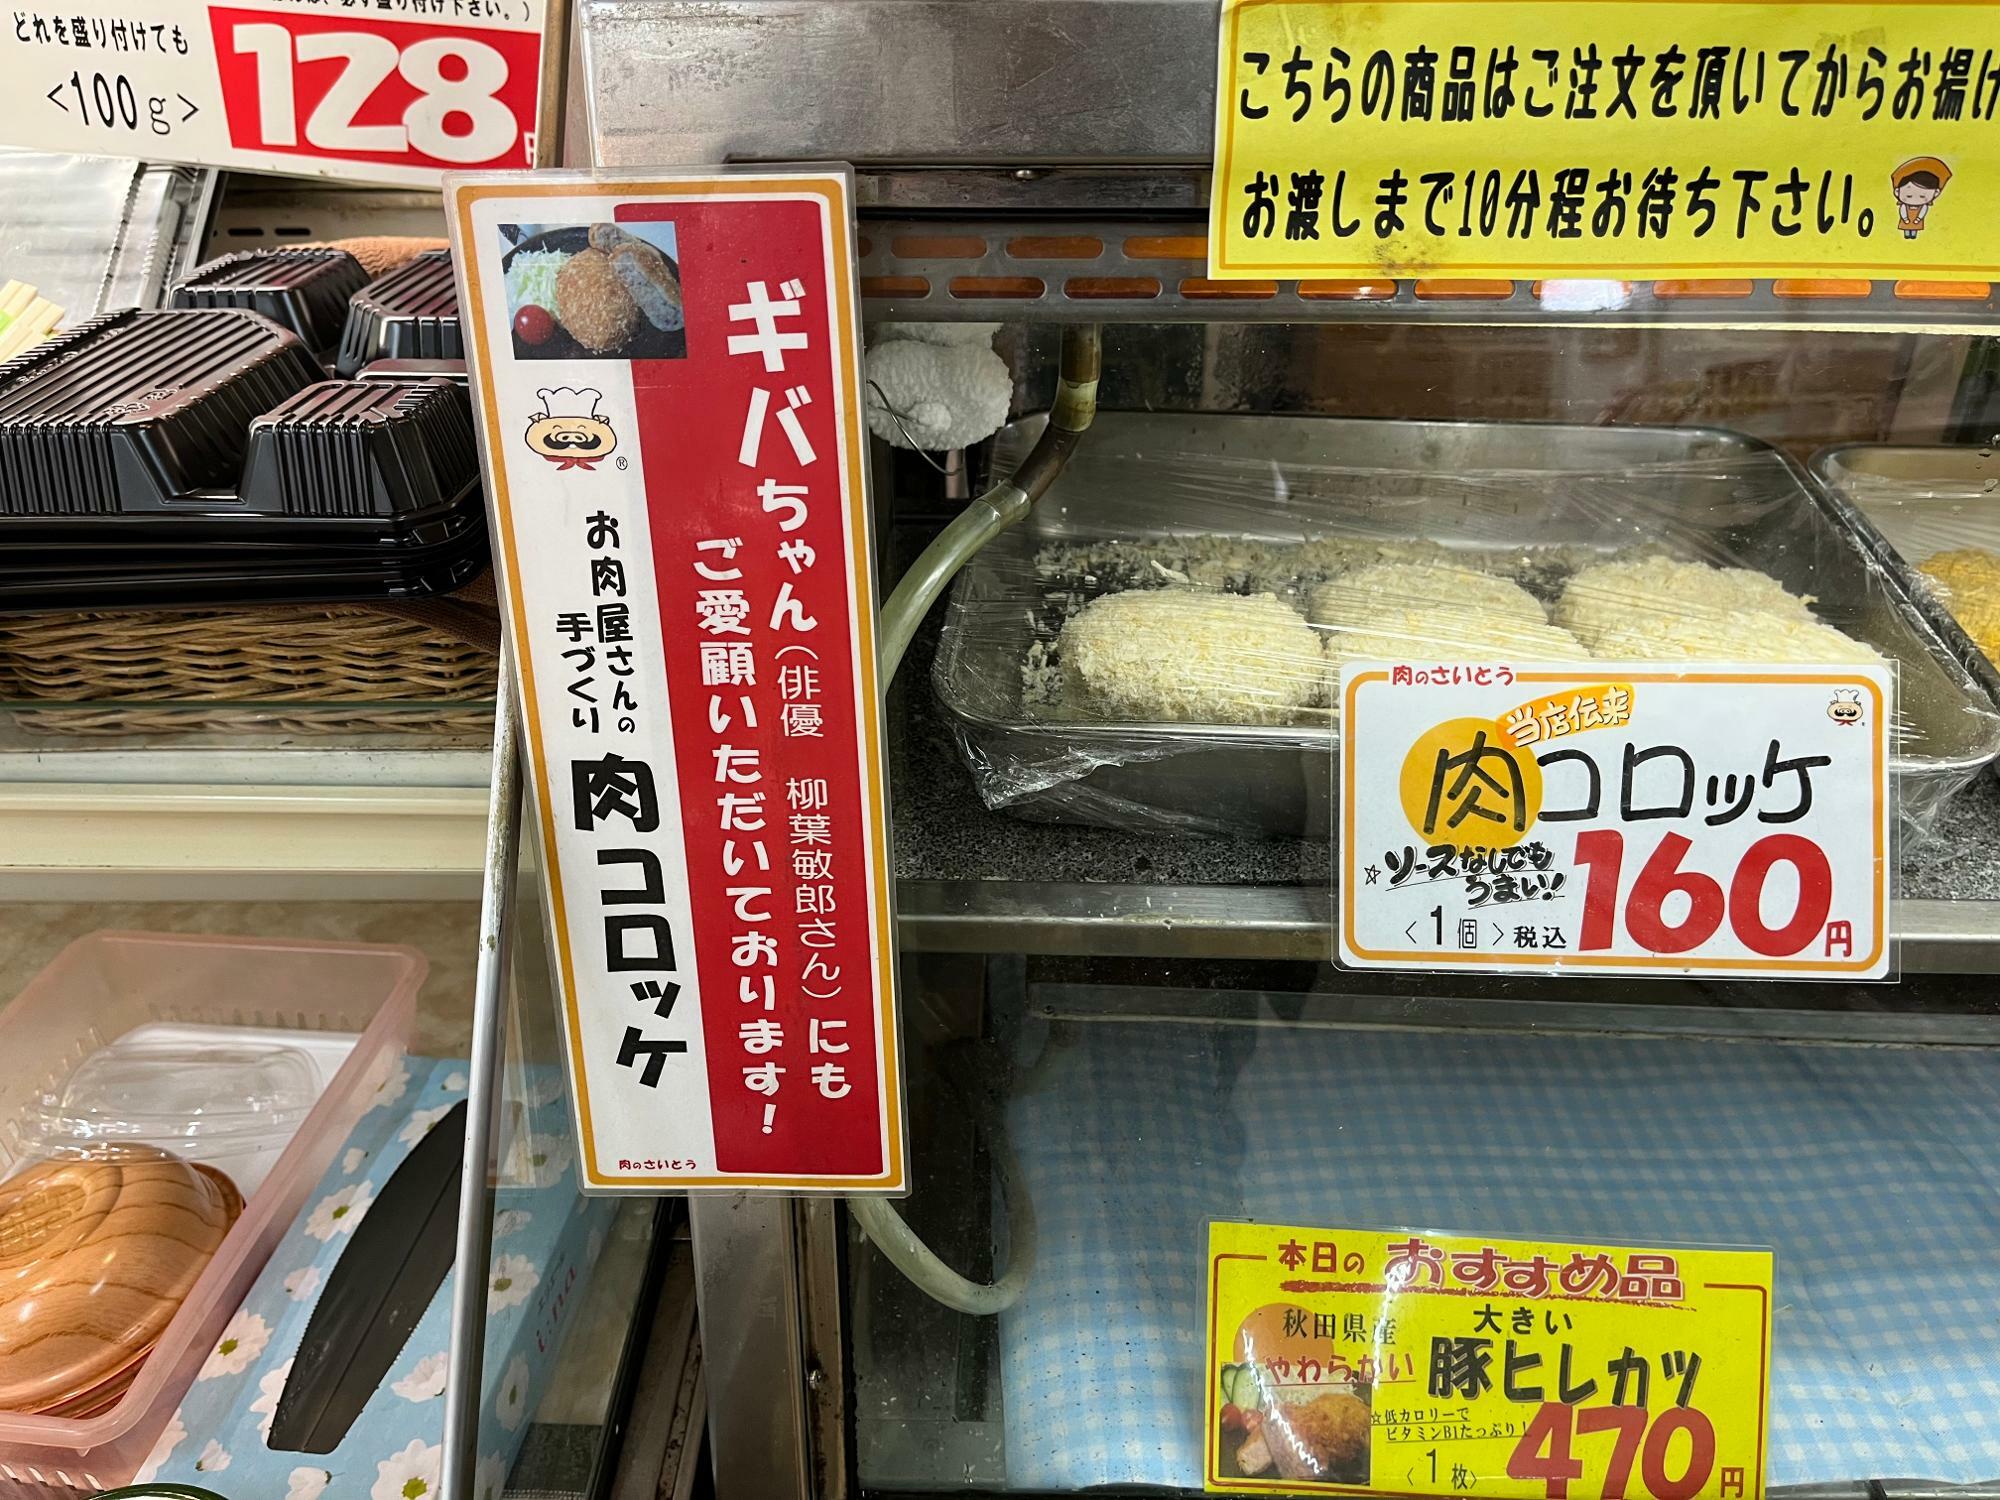 ギバちゃんも大好き肉コロッケは1個160円だ